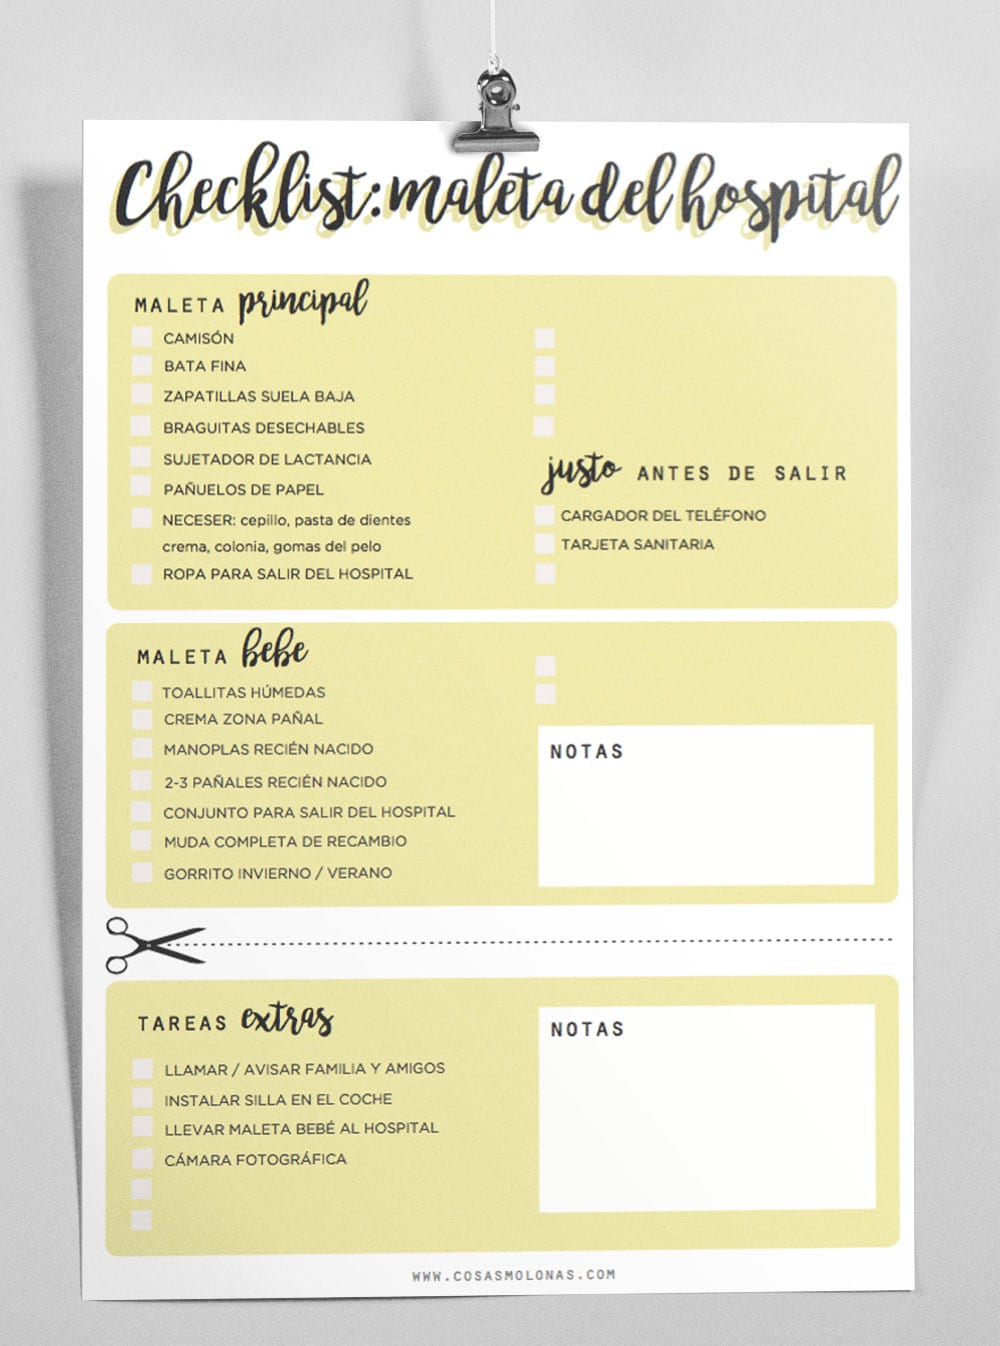 Imprimible / Checklist para la maleta de maternidad, Cosas Molonas, DIY Blog